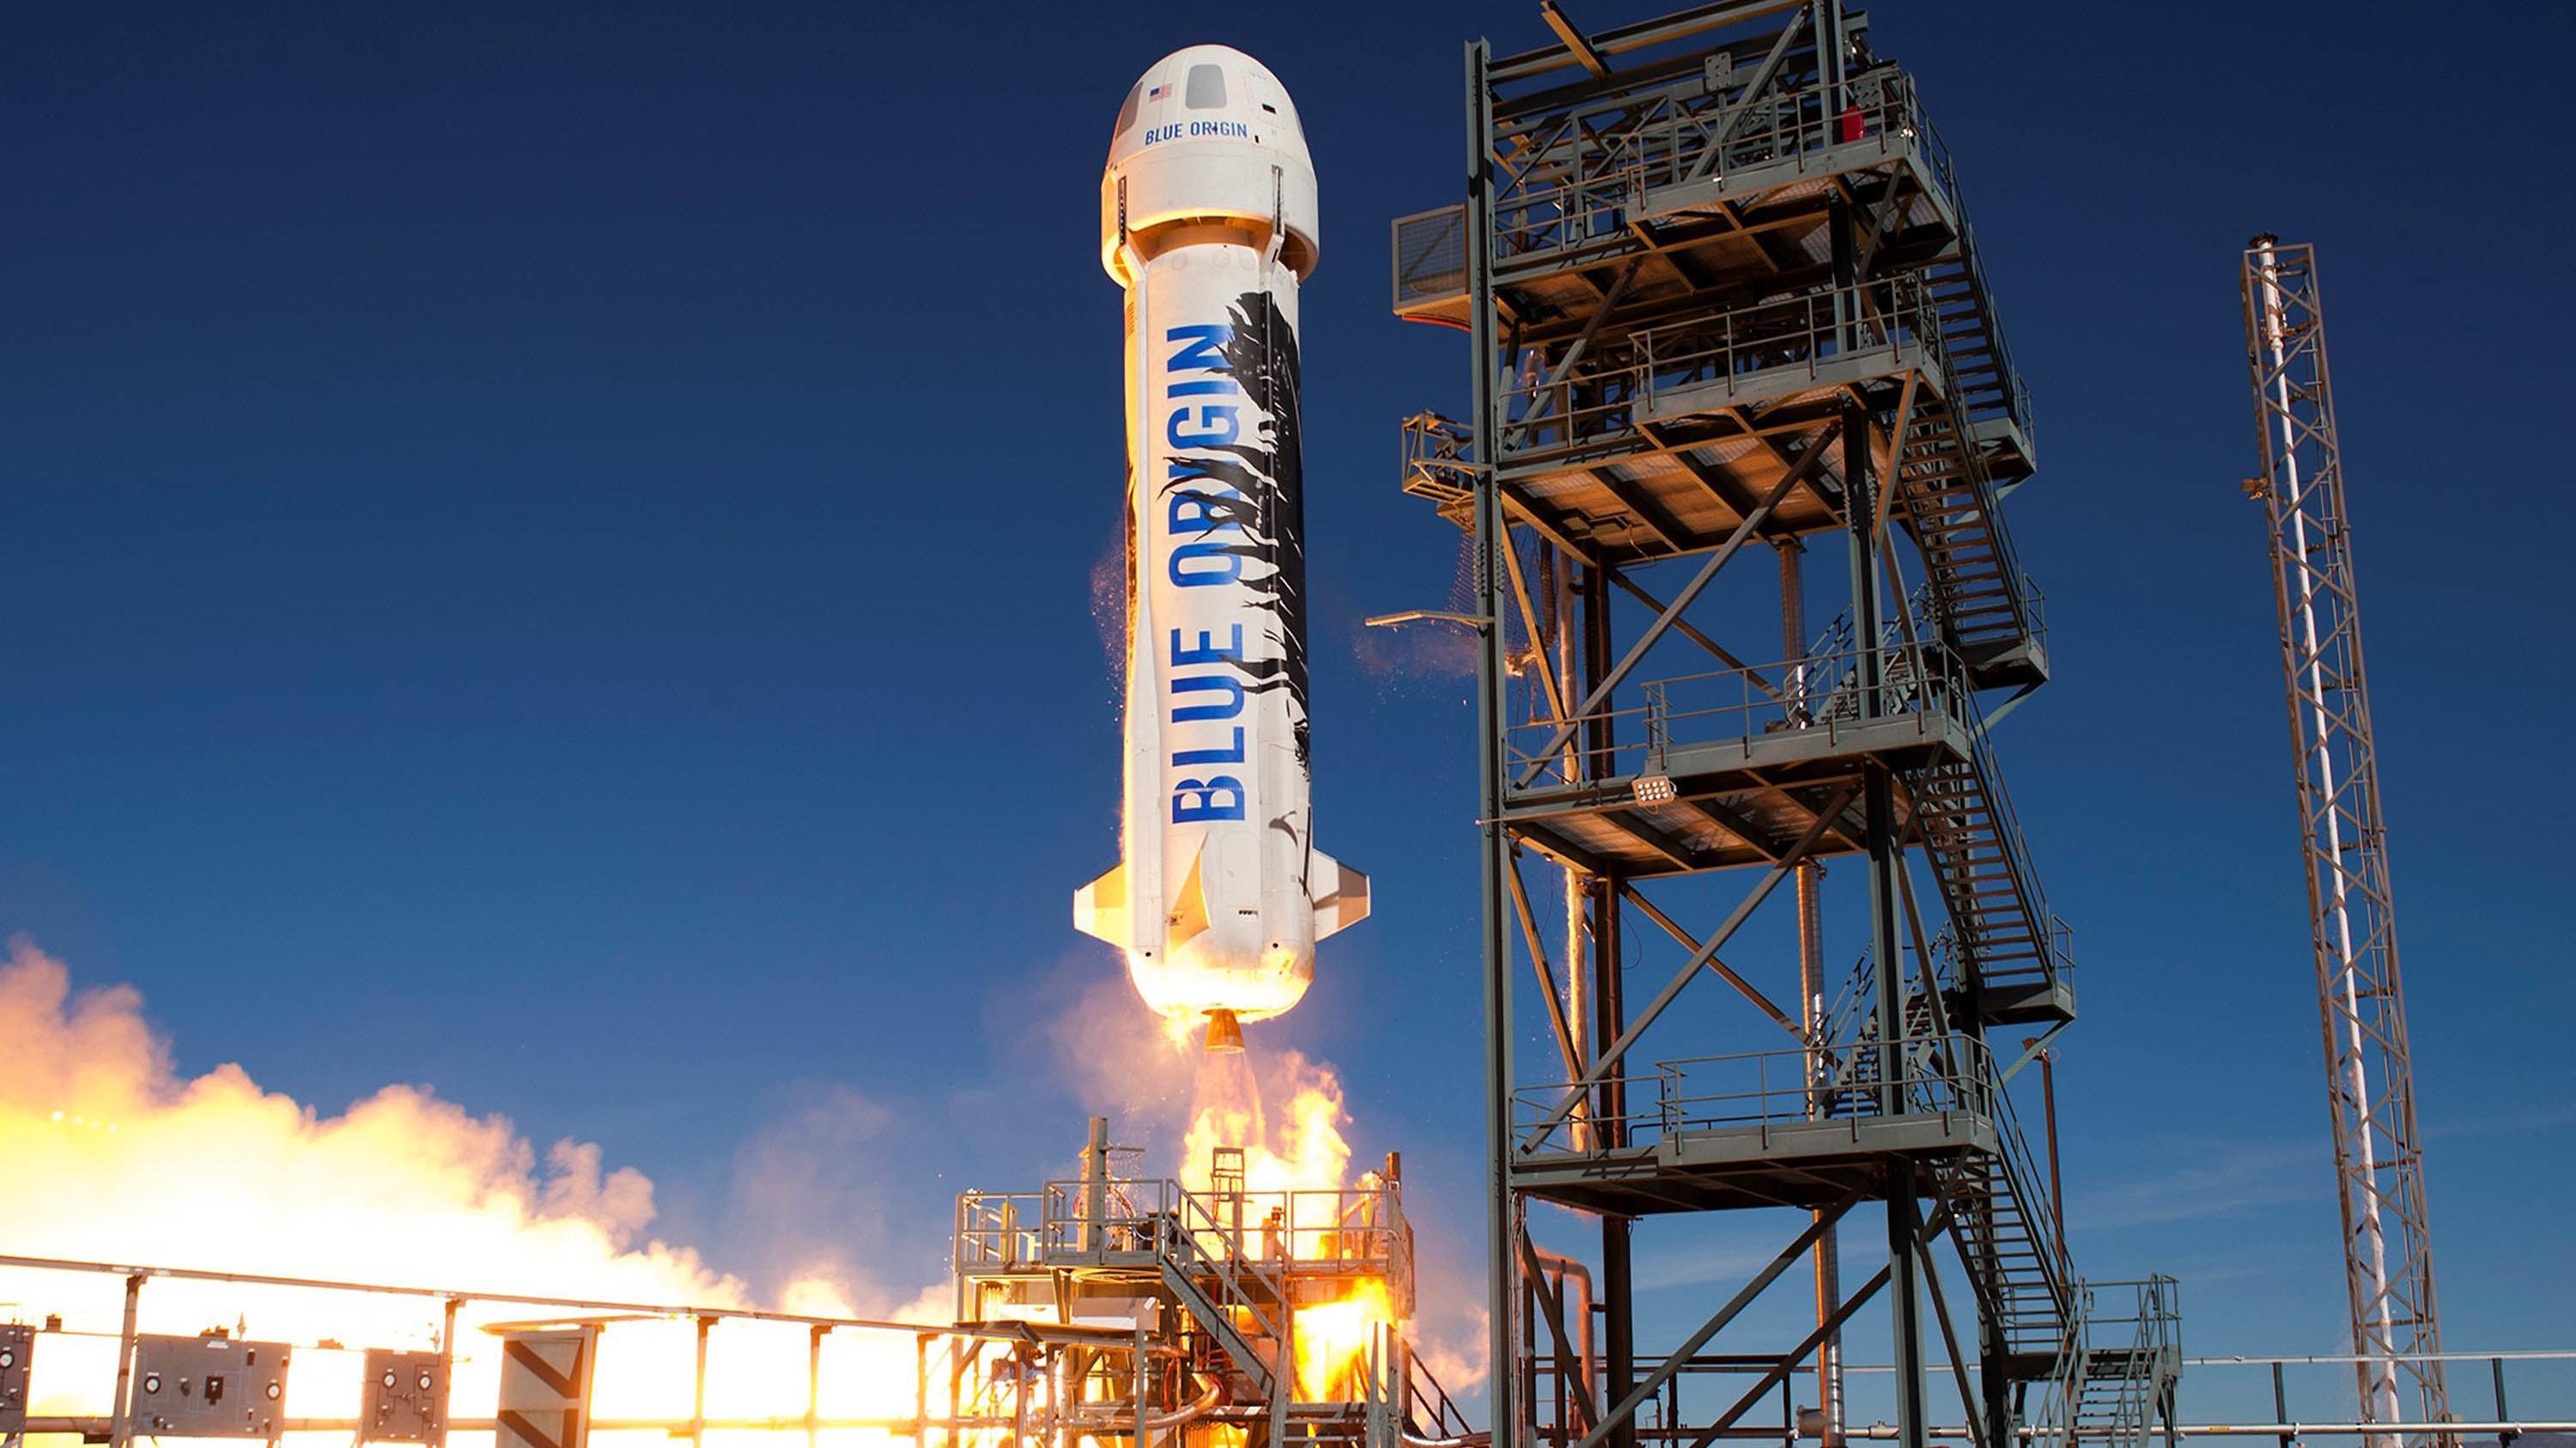 Эксперты объяснили ракету миллиардера Безоса в форме мужского полового органа